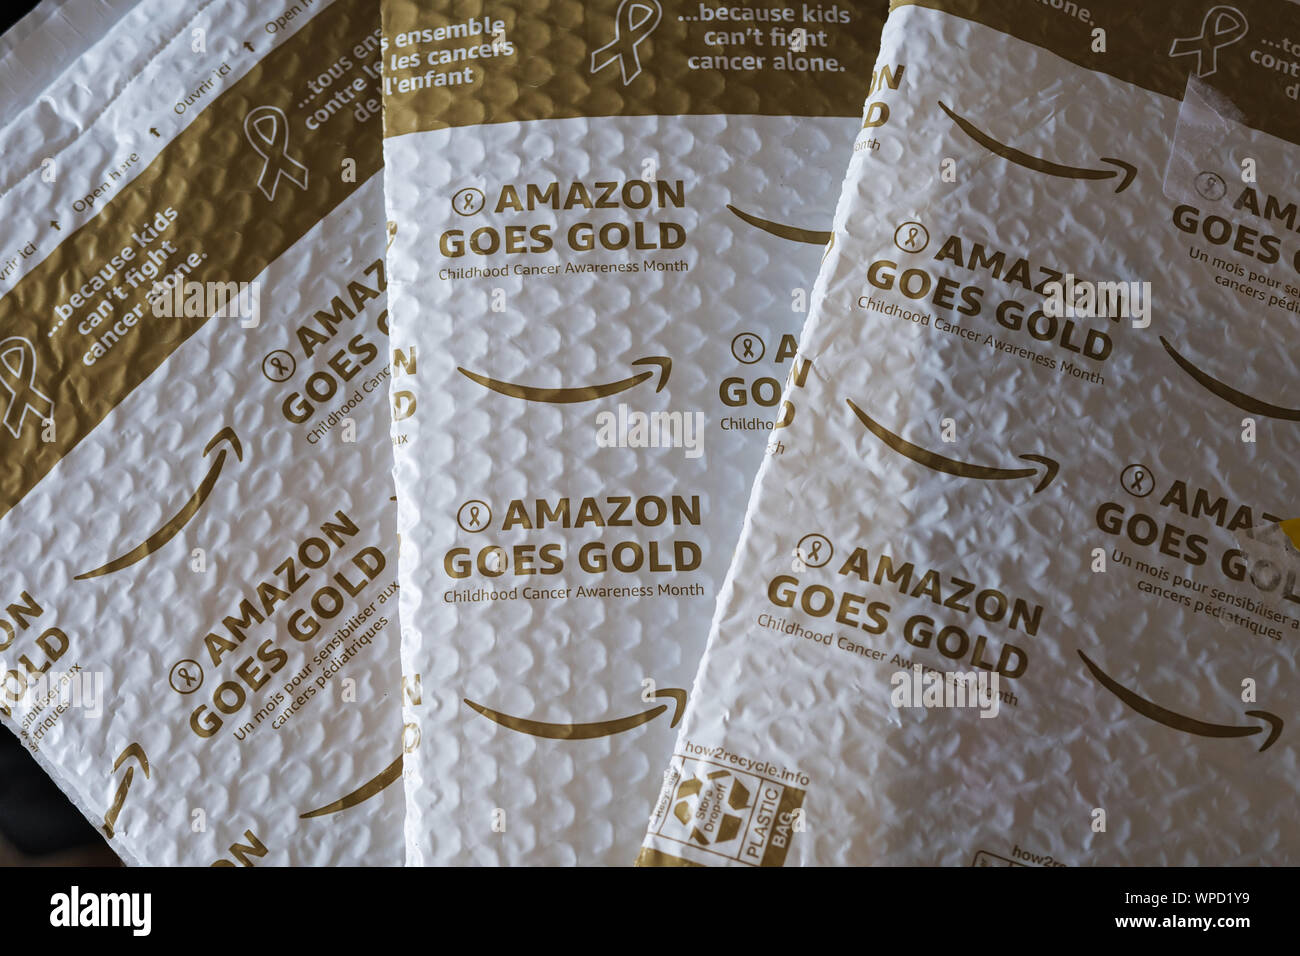 Vancouver, British Columbia, Kanada. 6. Sep 2019. Ein Amazon geht Gold  einzelne - Kunststoff Versand Briefumschläge. Für den Monat September Amazon  wird unter Verwendung des Gold Verpackung zu helfen, das Bewusstsein für